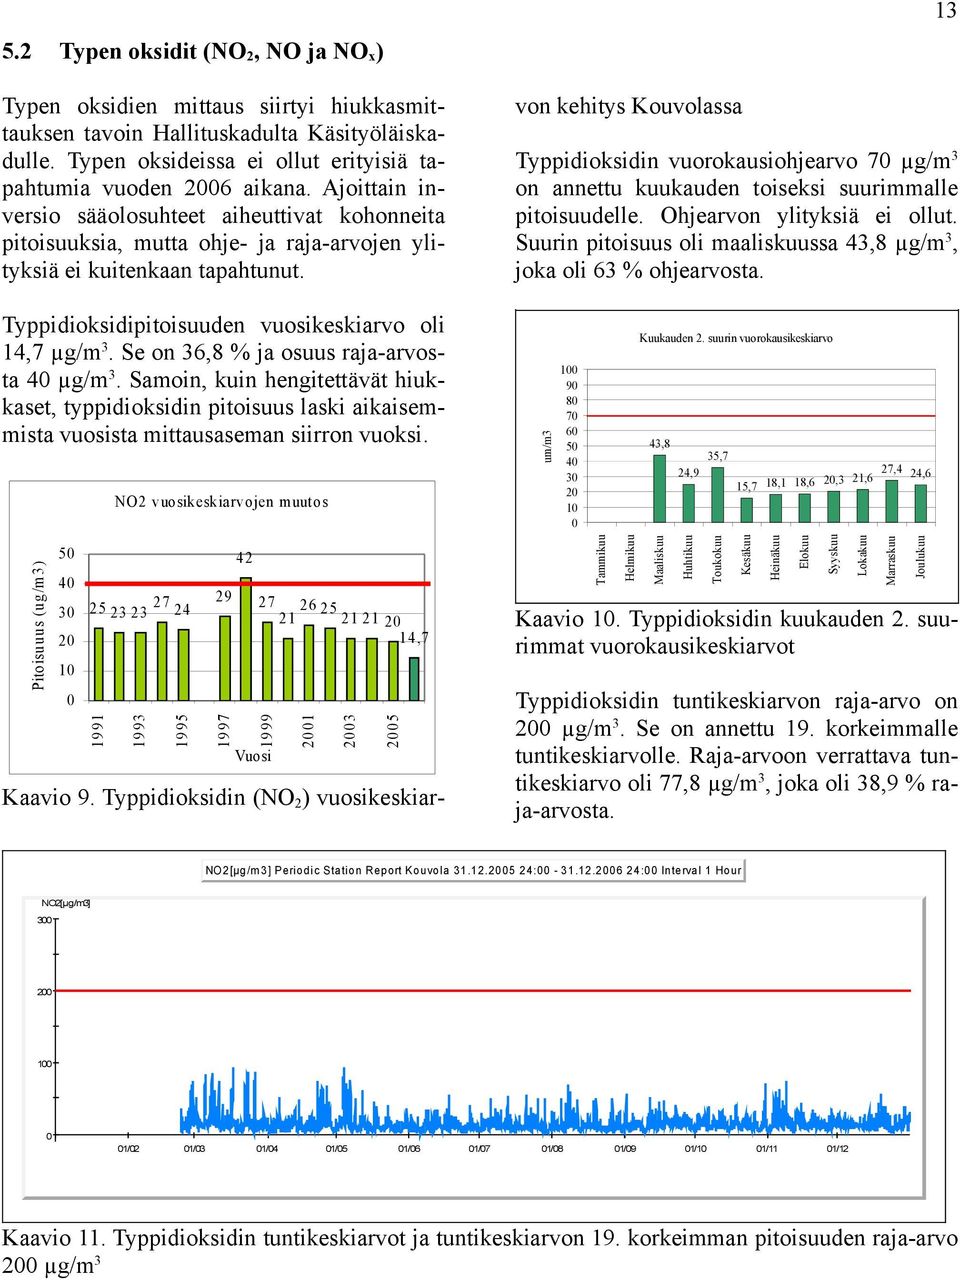 Typpidioksidin (NO 2 ) vuosikeskiarvon kehitys Kouvolassa 13 Typpidioksidin vuorokausiohjearvo 7 µg/m 3 on annettu kuukauden toiseksi suurimmalle pitoisuudelle. Ohjearvon ylityksiä ei ollut.